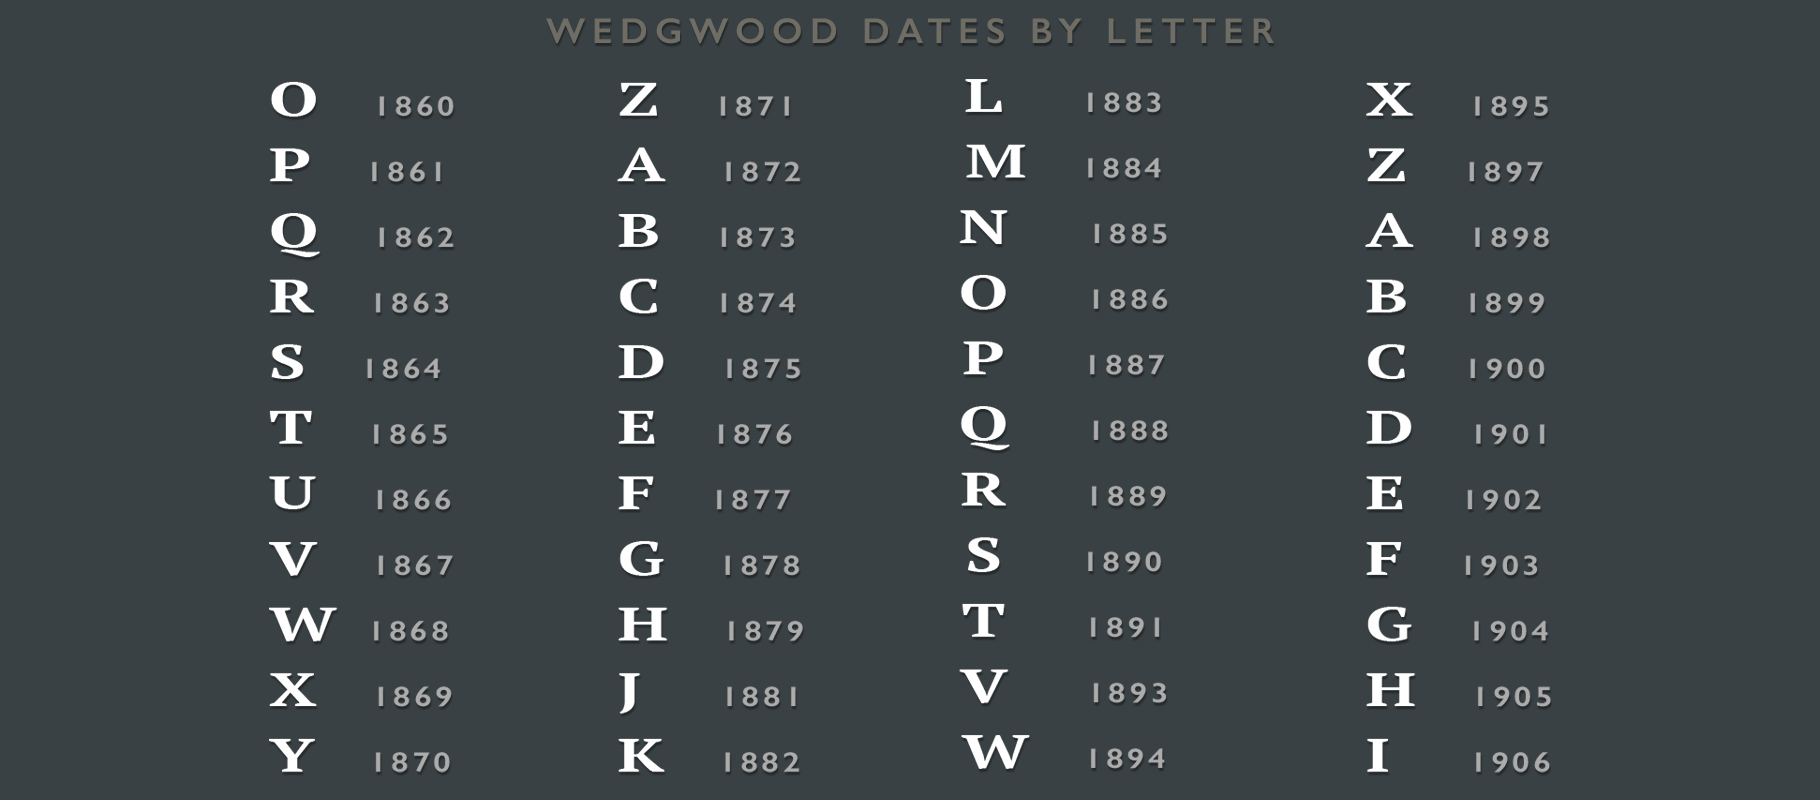 Wedgwood dates